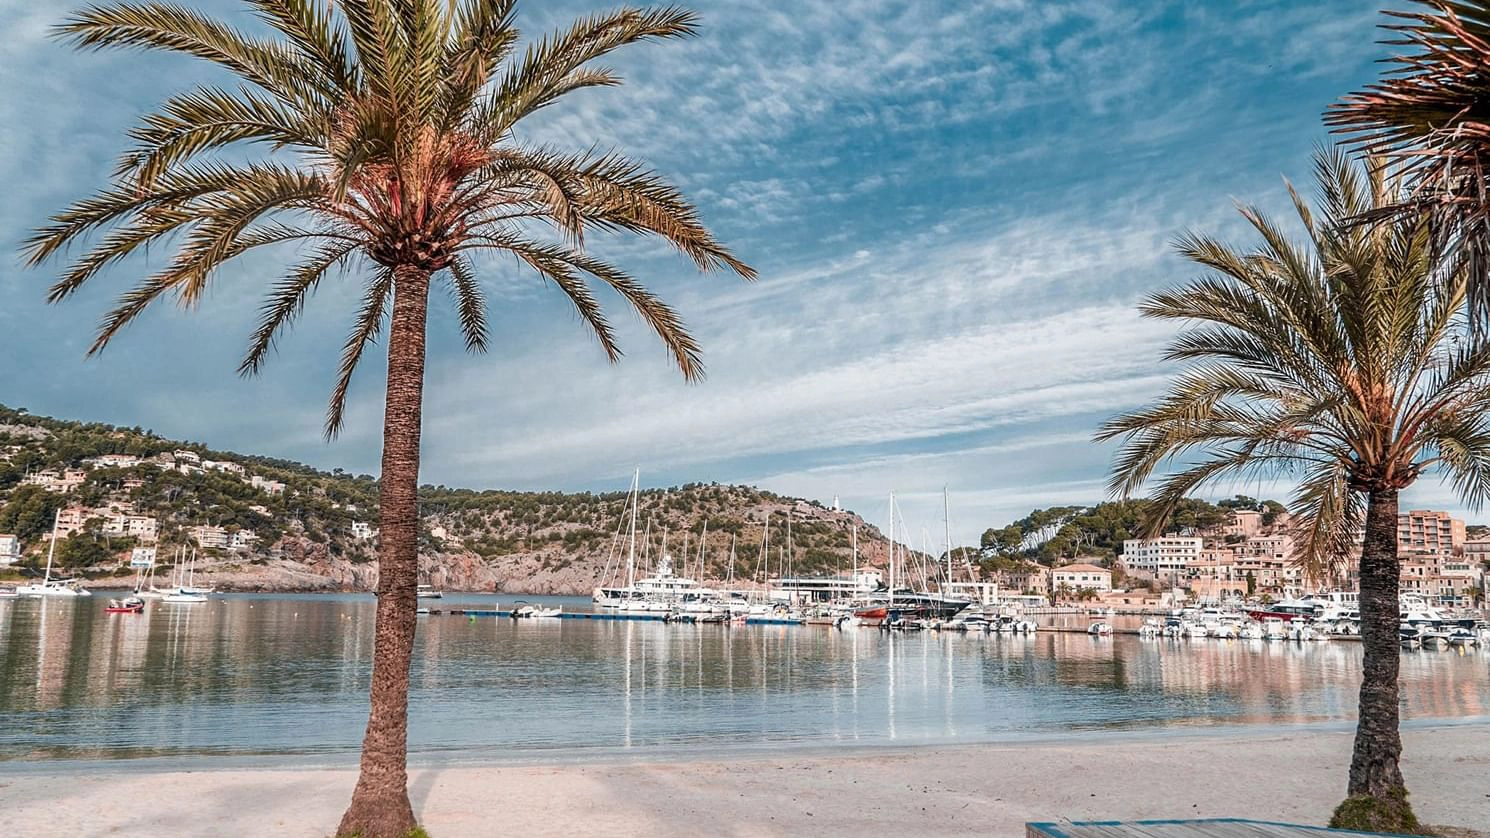  Port de Soller  strand - Mallorca